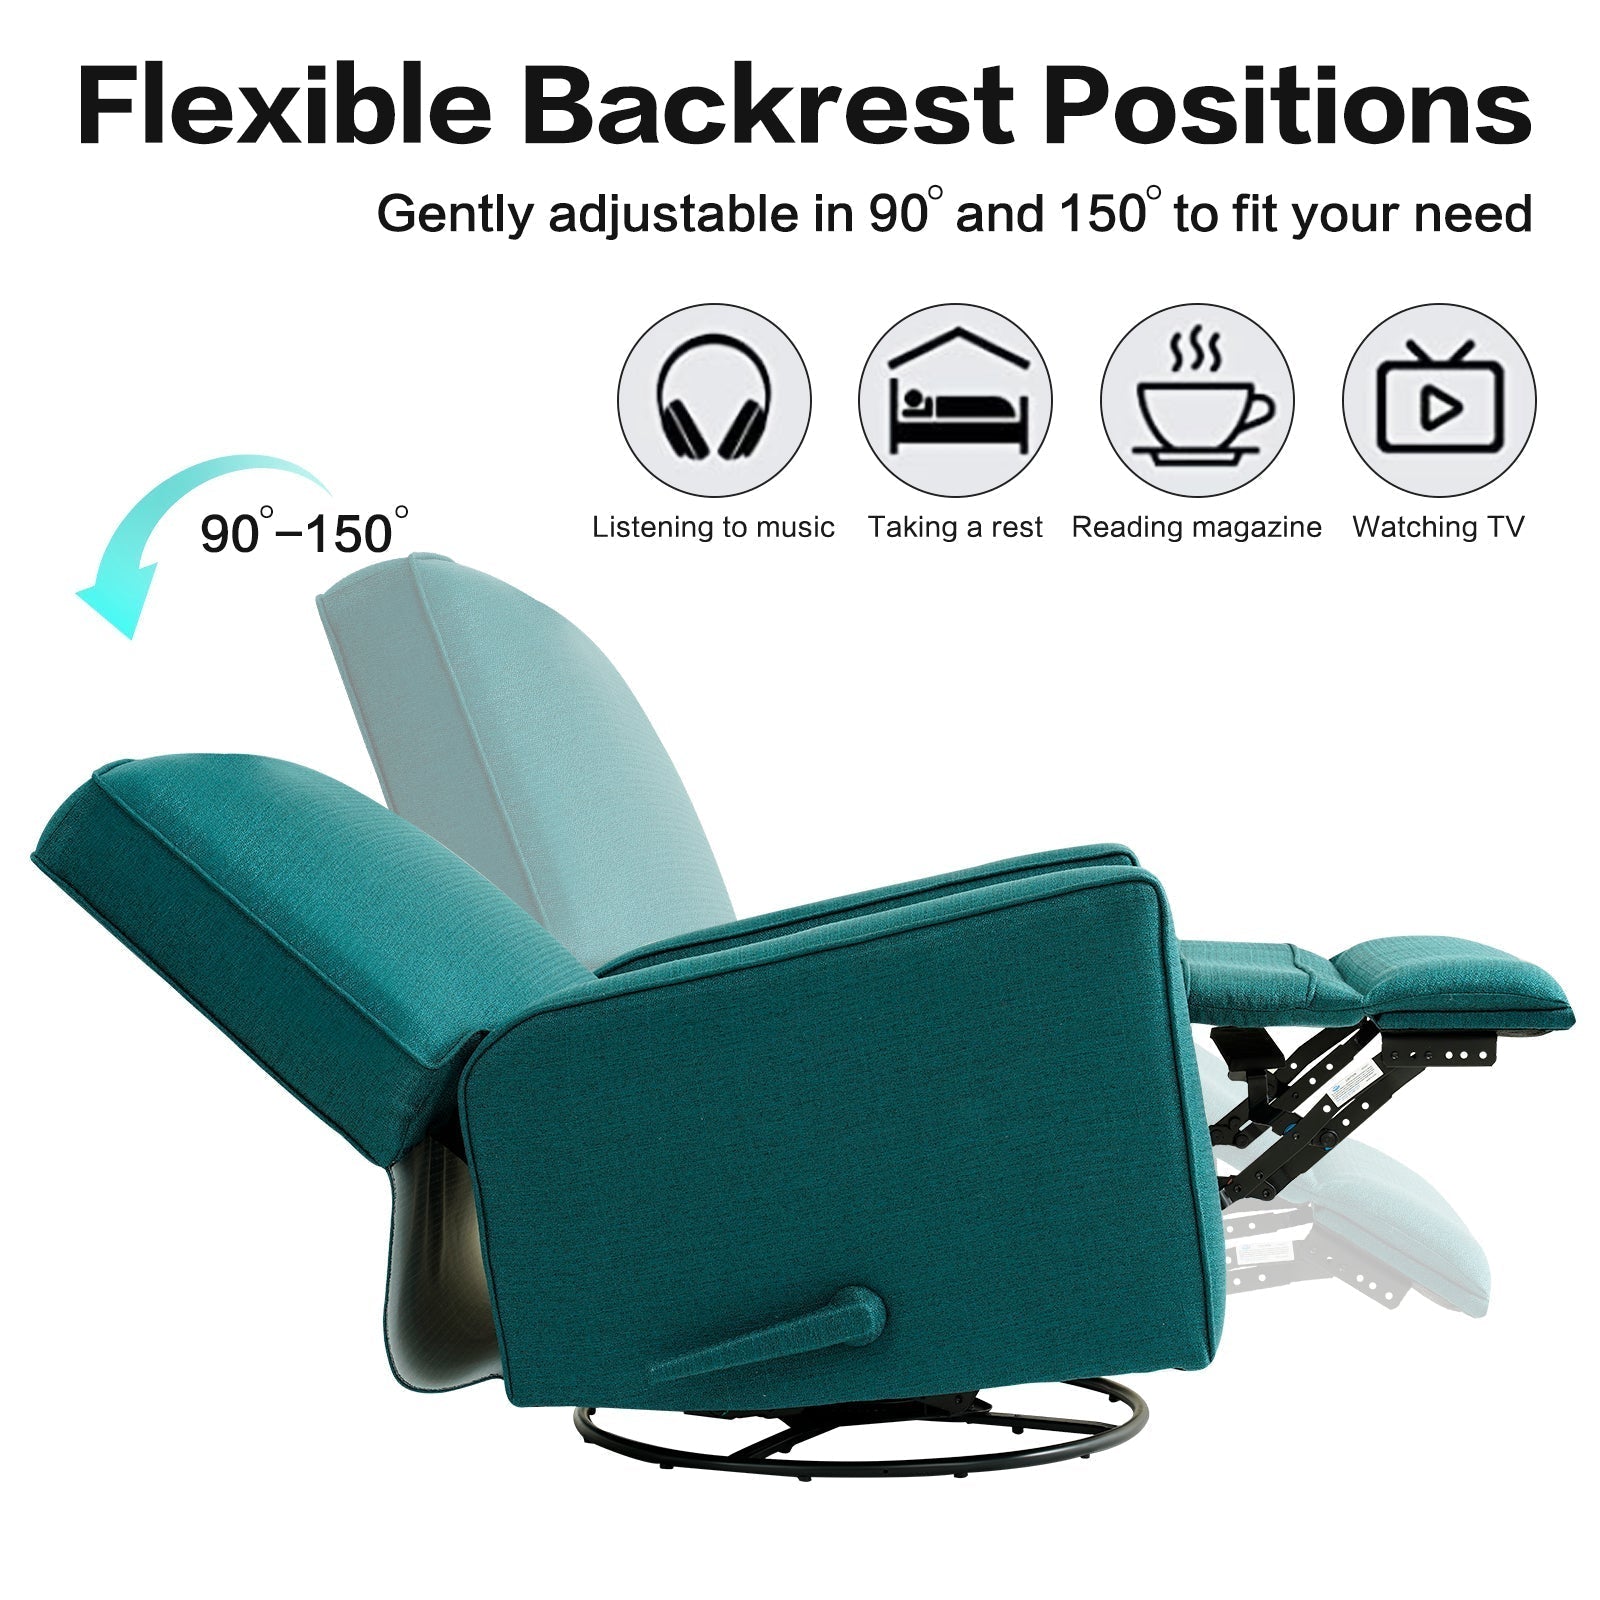 Large 360 Degree Recliner Swivel Rocker Nursery Glider Chair for Living Room